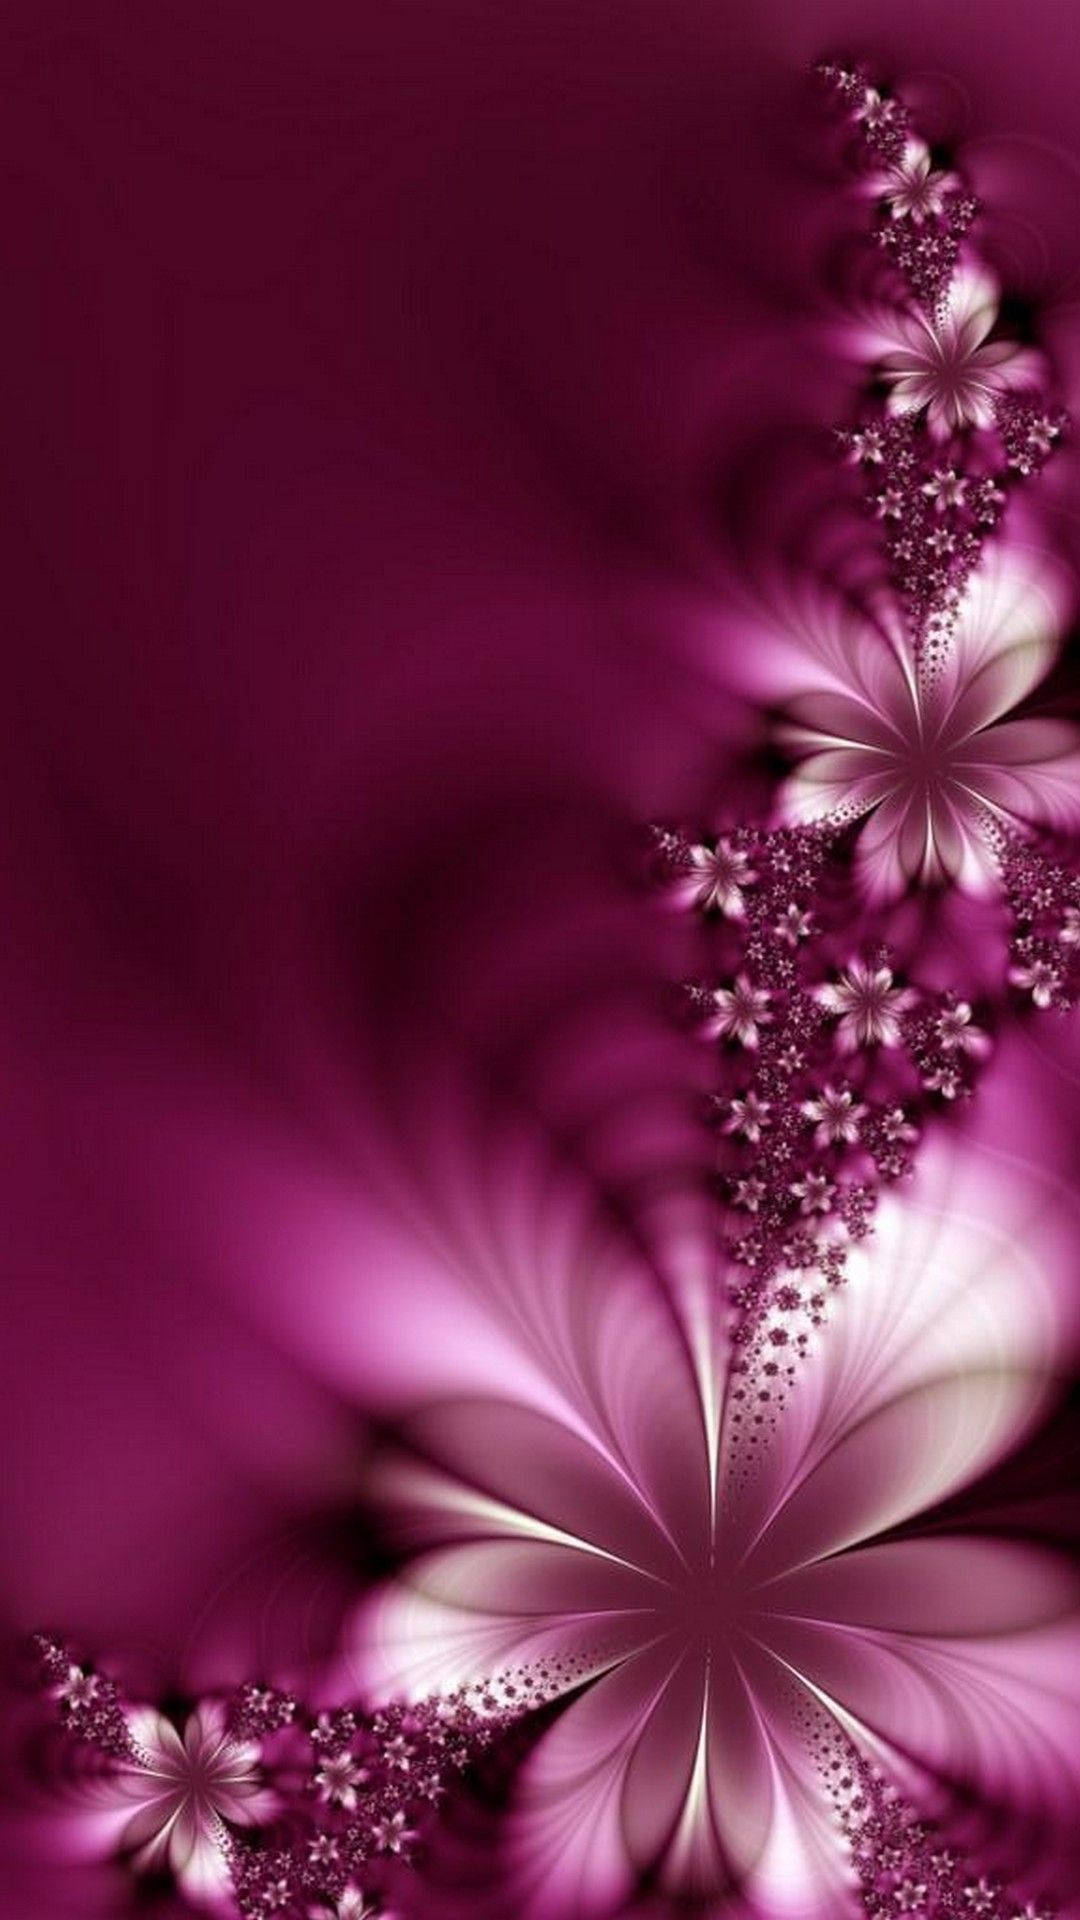 Cute Pink Flower Pieces Digital Artwork Wallpaper